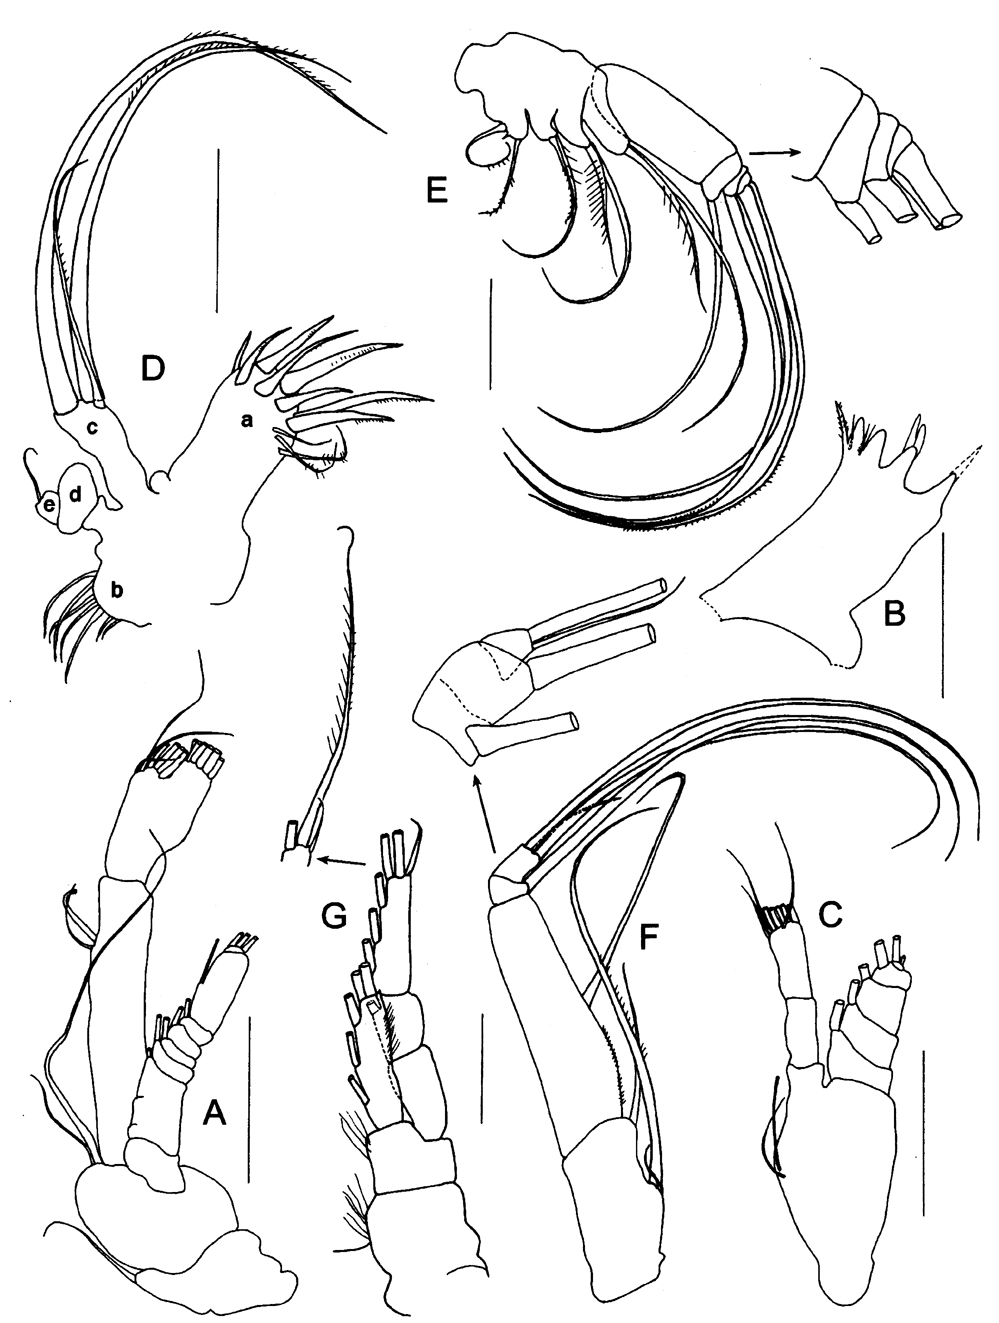 Espce Caudacalanus vicinus - Planche 2 de figures morphologiques